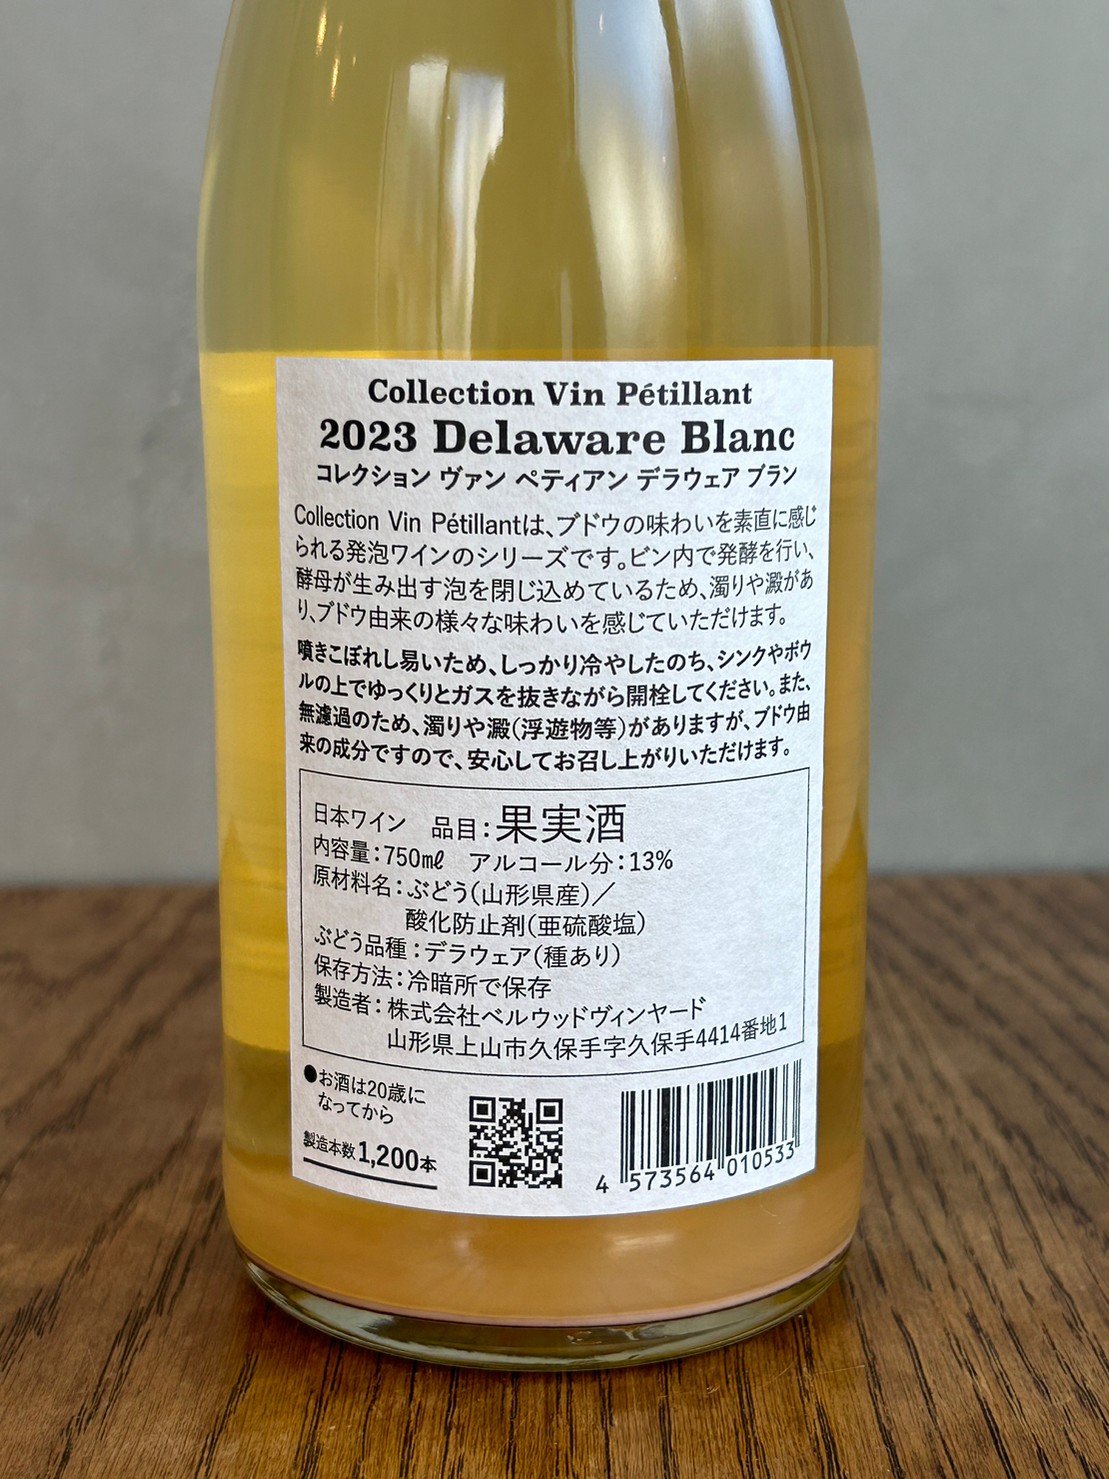 Colection Vin Peti lant 2023 Delaware Blanc ‐コレクション ヴァン ペティアン 2023 デラウエア ブラン詳細